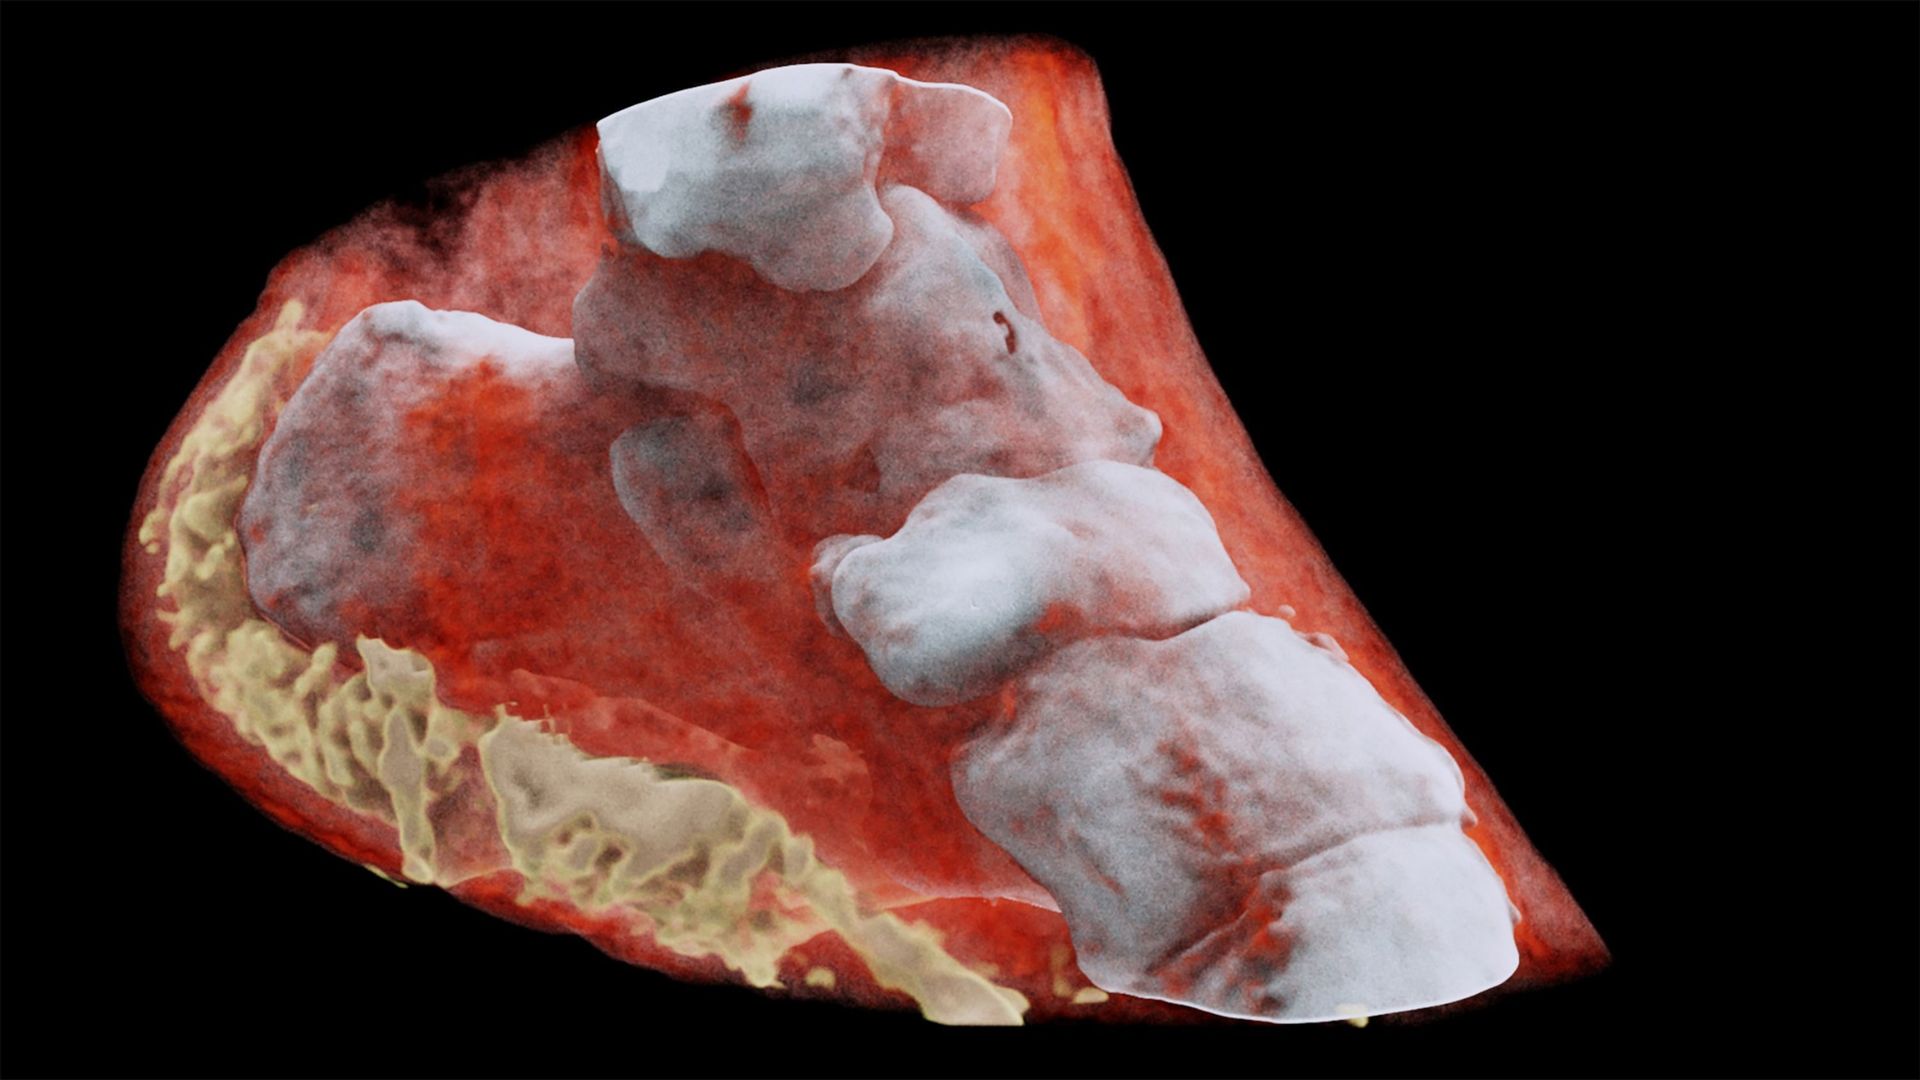 Selon le CERN, les images montrent très clairement la différence entre l'os, le muscle et le cartilage, mais aussi la position et la taille des tumeurs cancéreuses, par exemple.